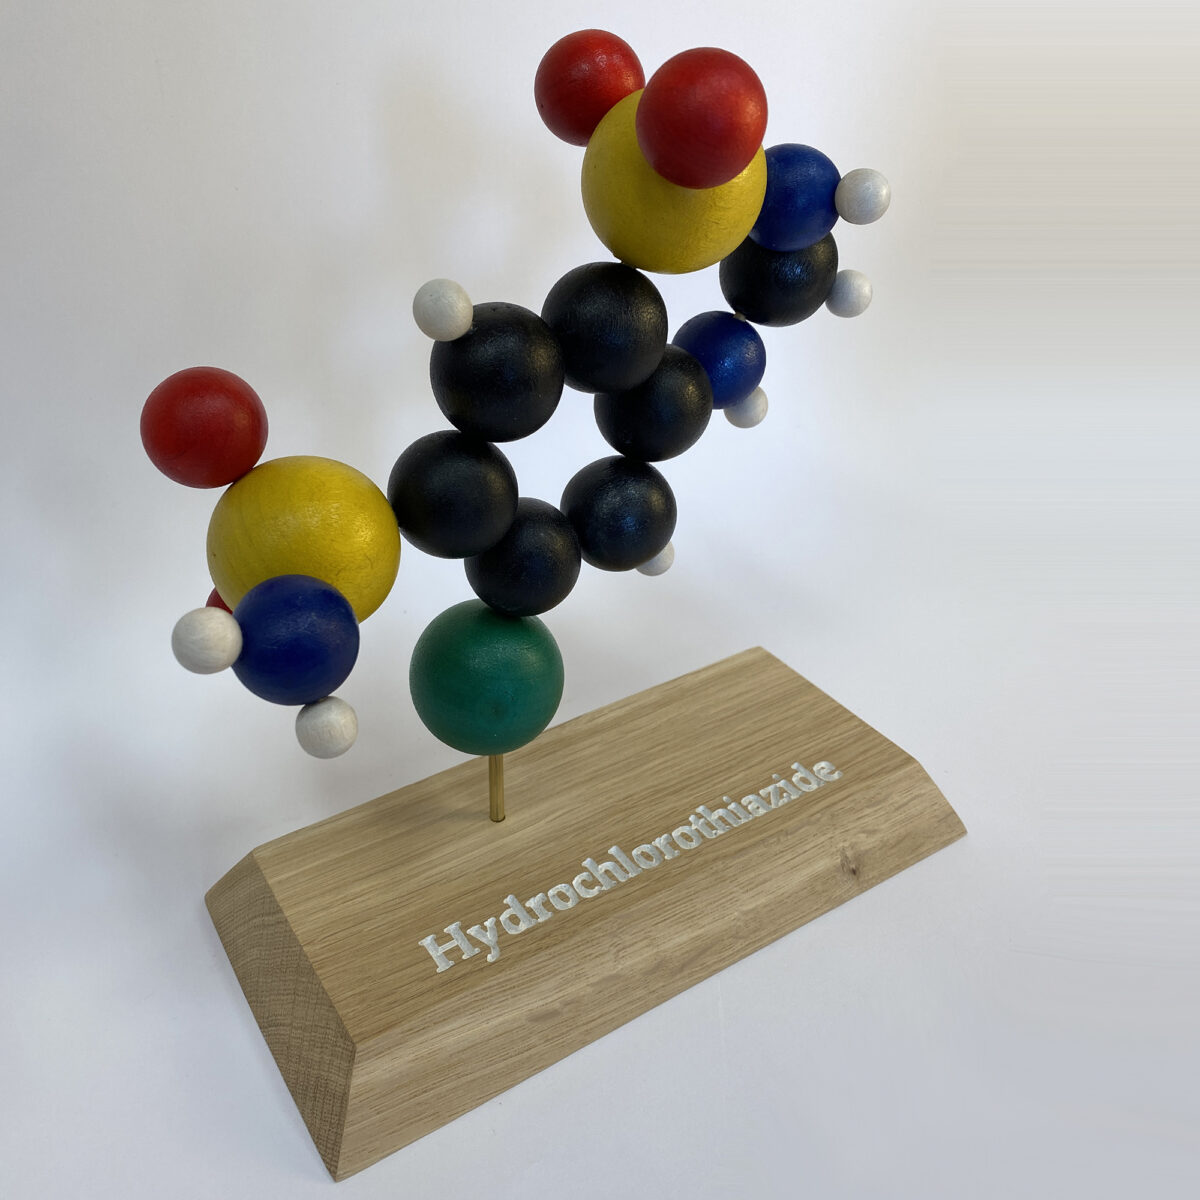 Hydrochlorothiazide molecule model